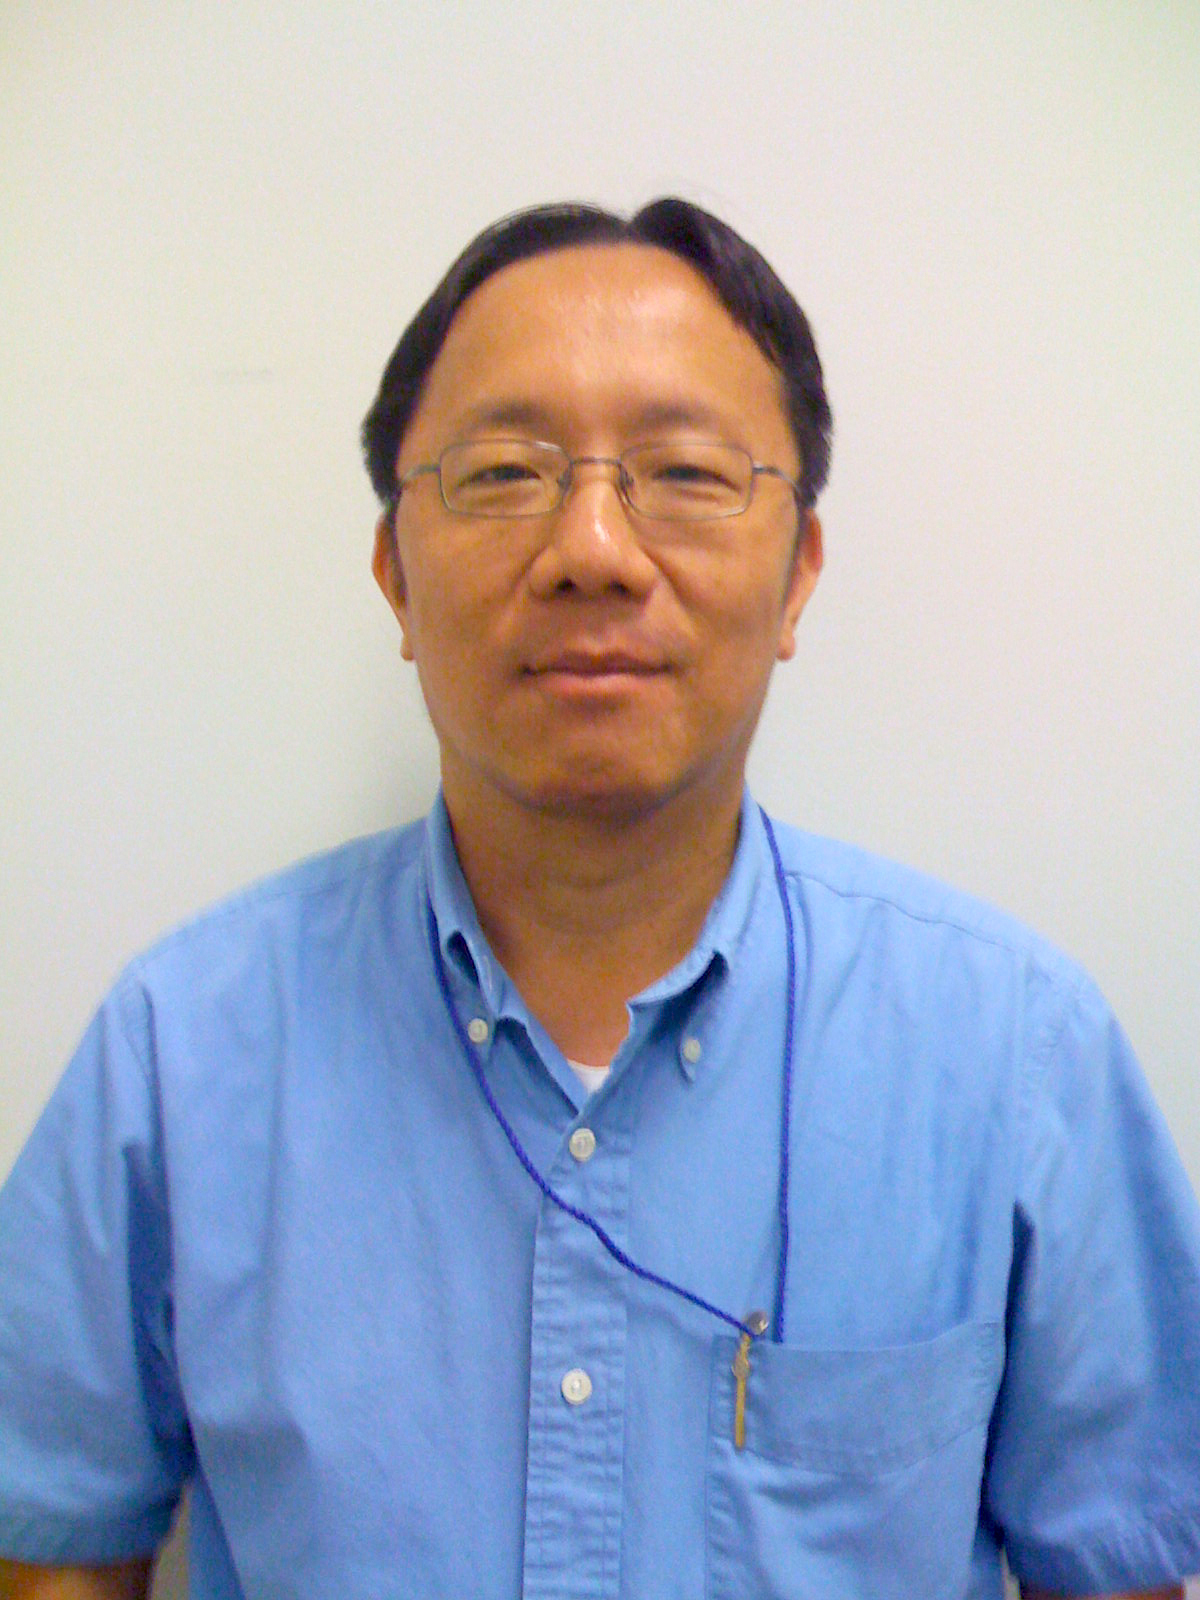 Profile image of Po-Tsan Ku